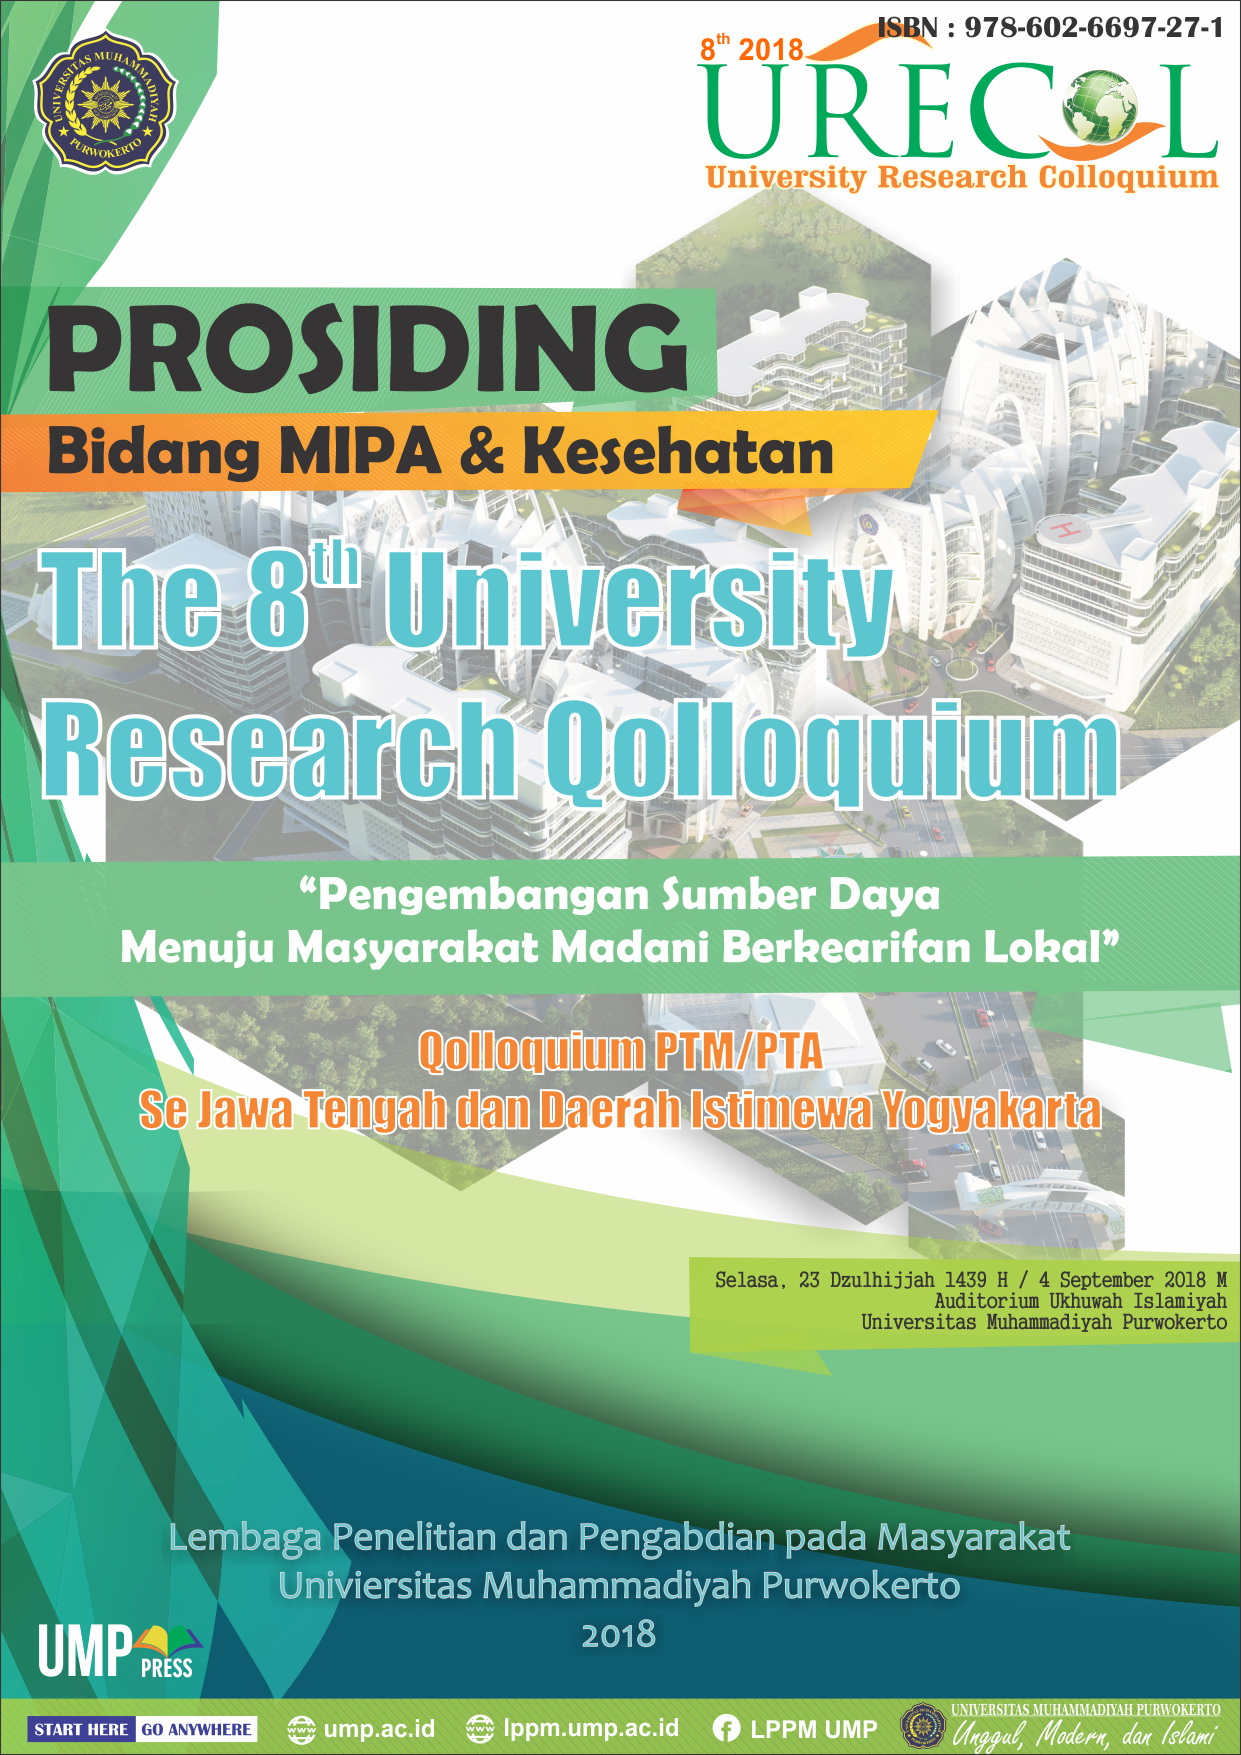 					View Proceeding of The 8th University Research Colloquium 2018: Bidang MIPA dan Kesehatan
				